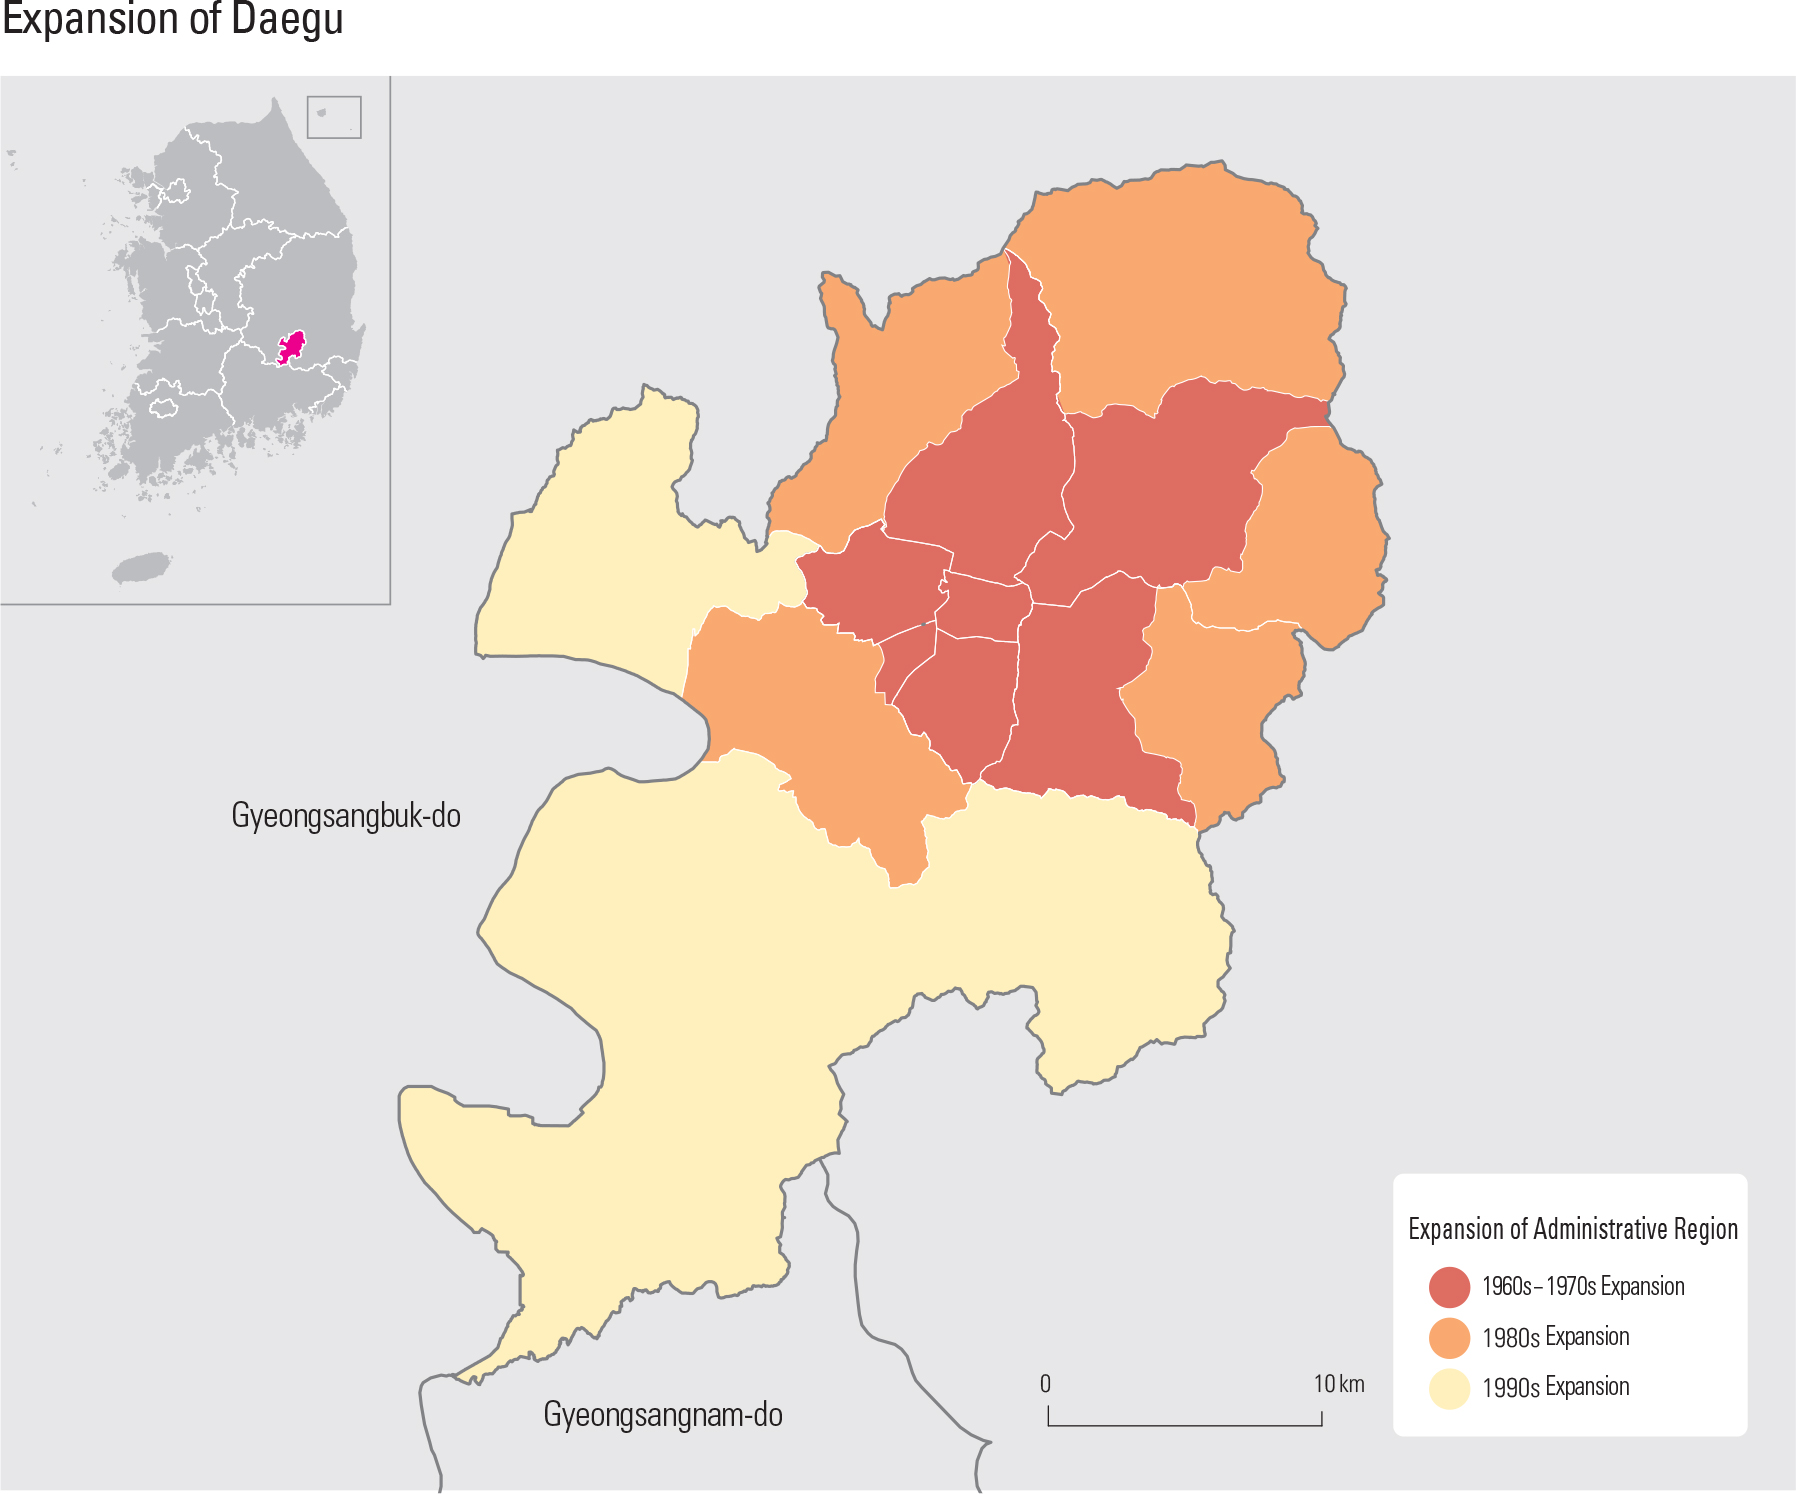 Expansion of Daegu